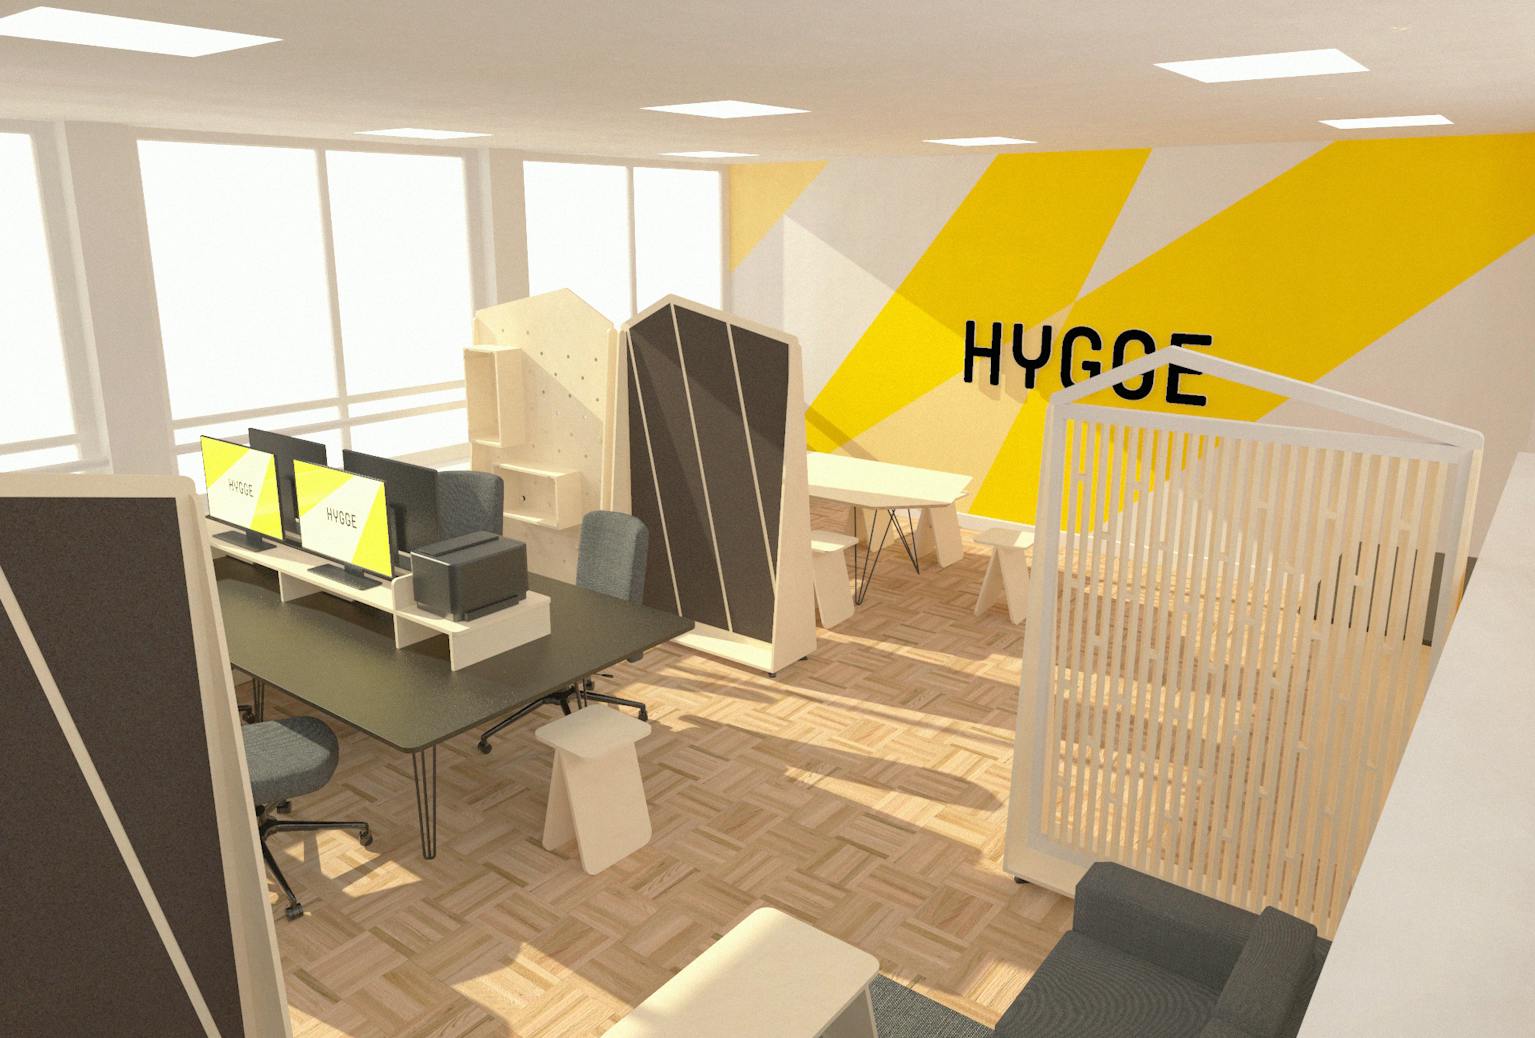 Simulation en 3D du design d'espace et de l'agencement des bureaux de HYGGE.